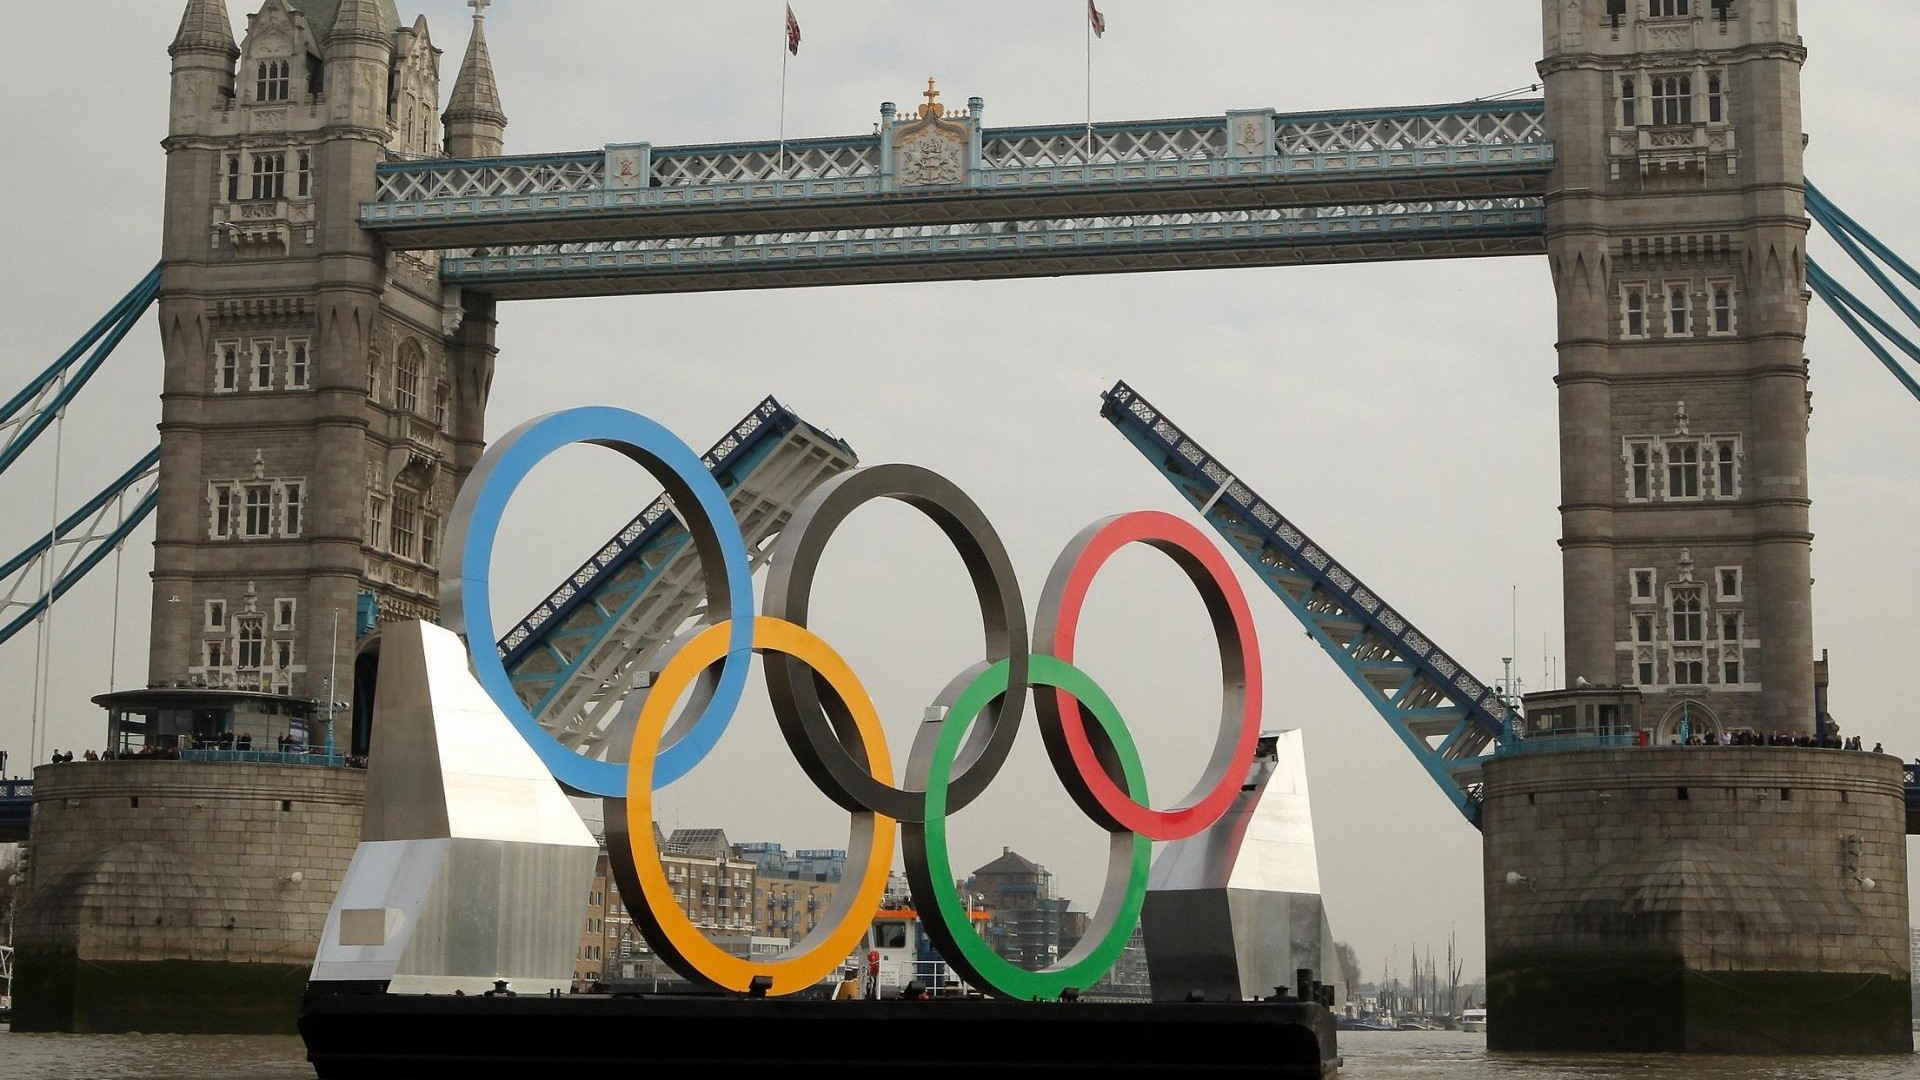 Londres 2012 Olimpiadas fondos temáticos (2) #21 - 1920x1080